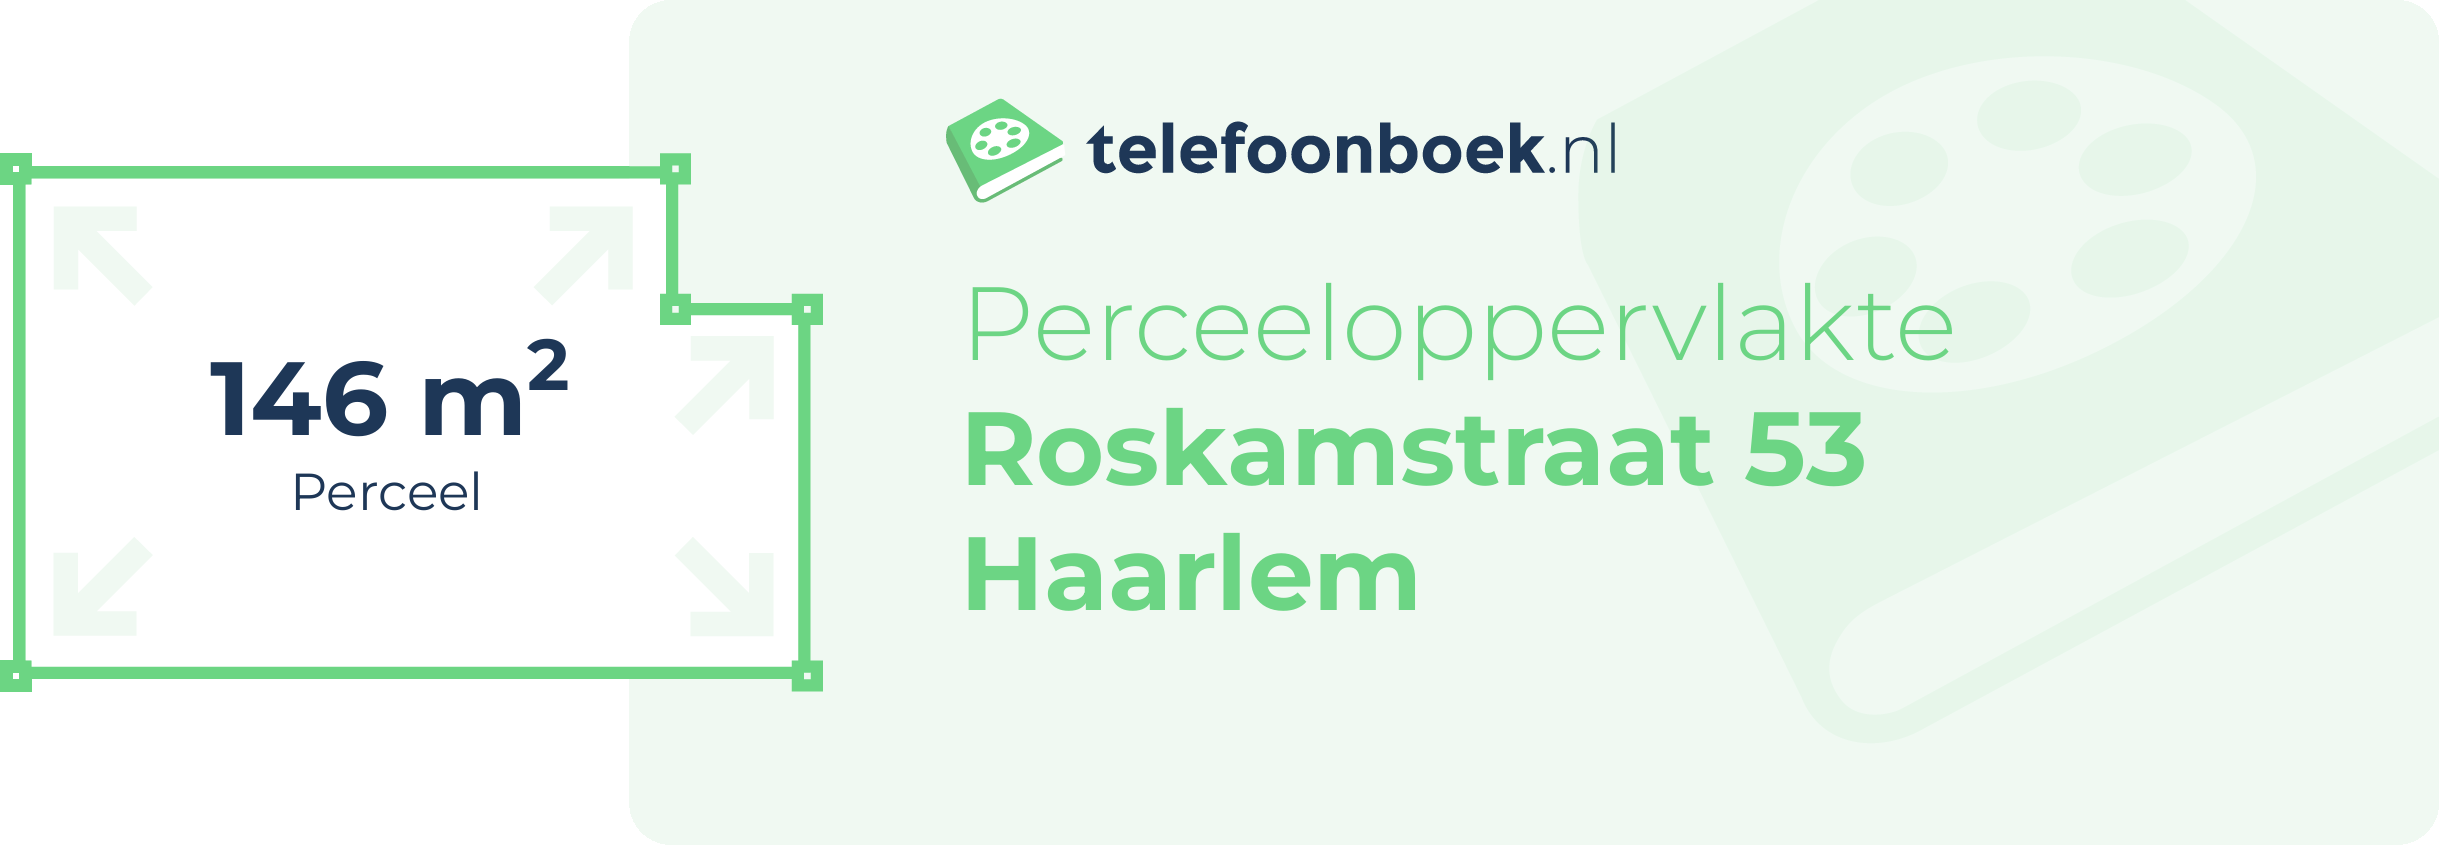 Perceeloppervlakte Roskamstraat 53 Haarlem